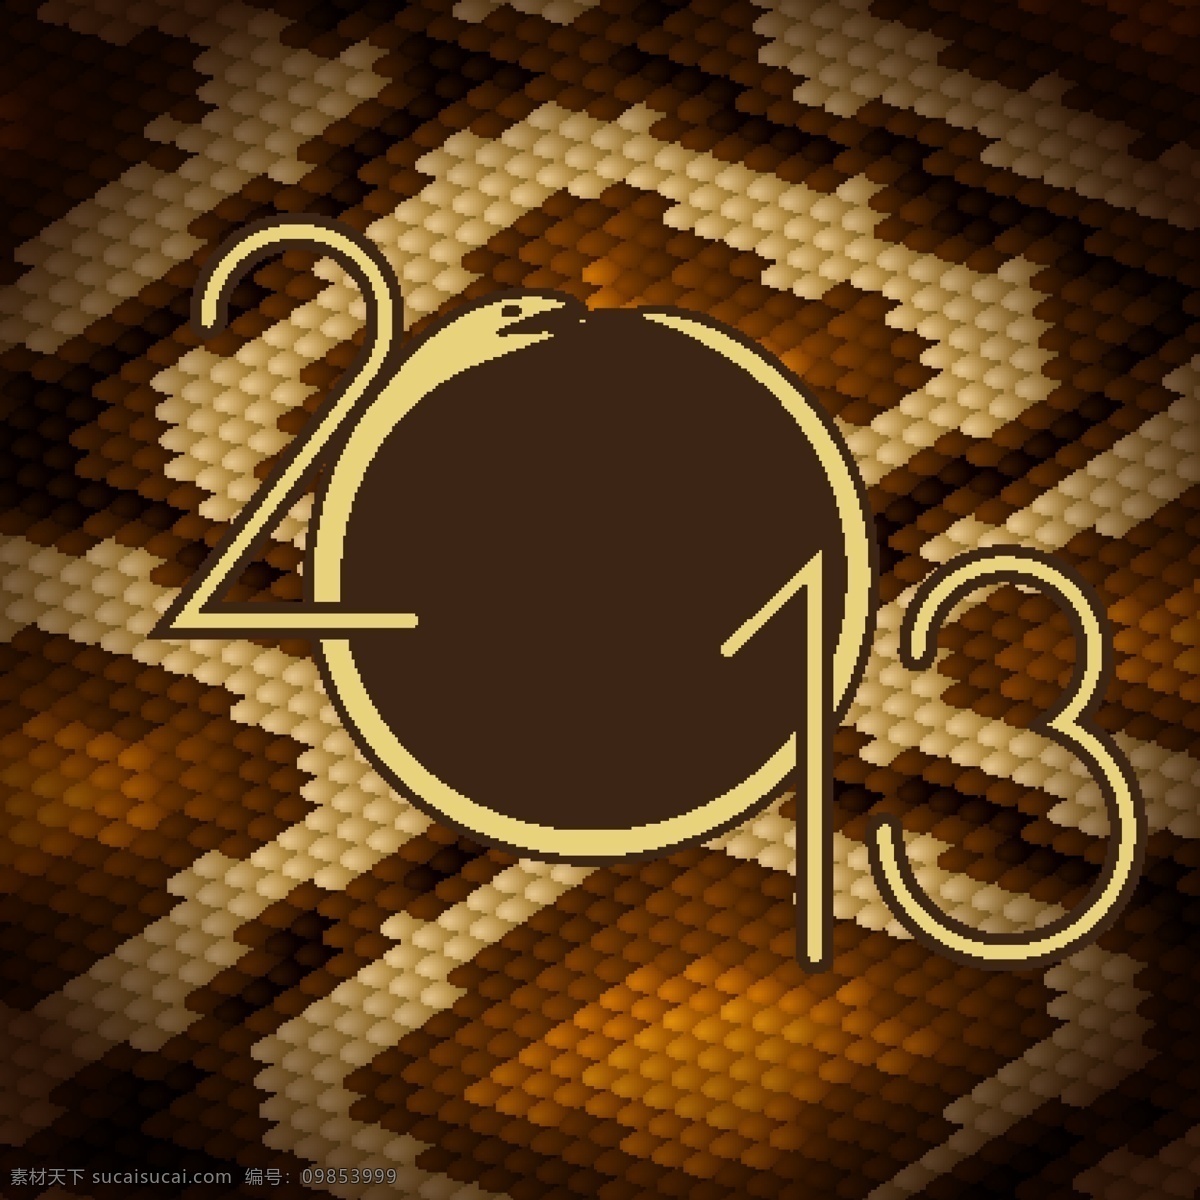 2013 蛇年 模板 新年 艺术字体 字体设计 时尚字体 矢量素材 底纹背景 矢量背景 底纹边框 黑色